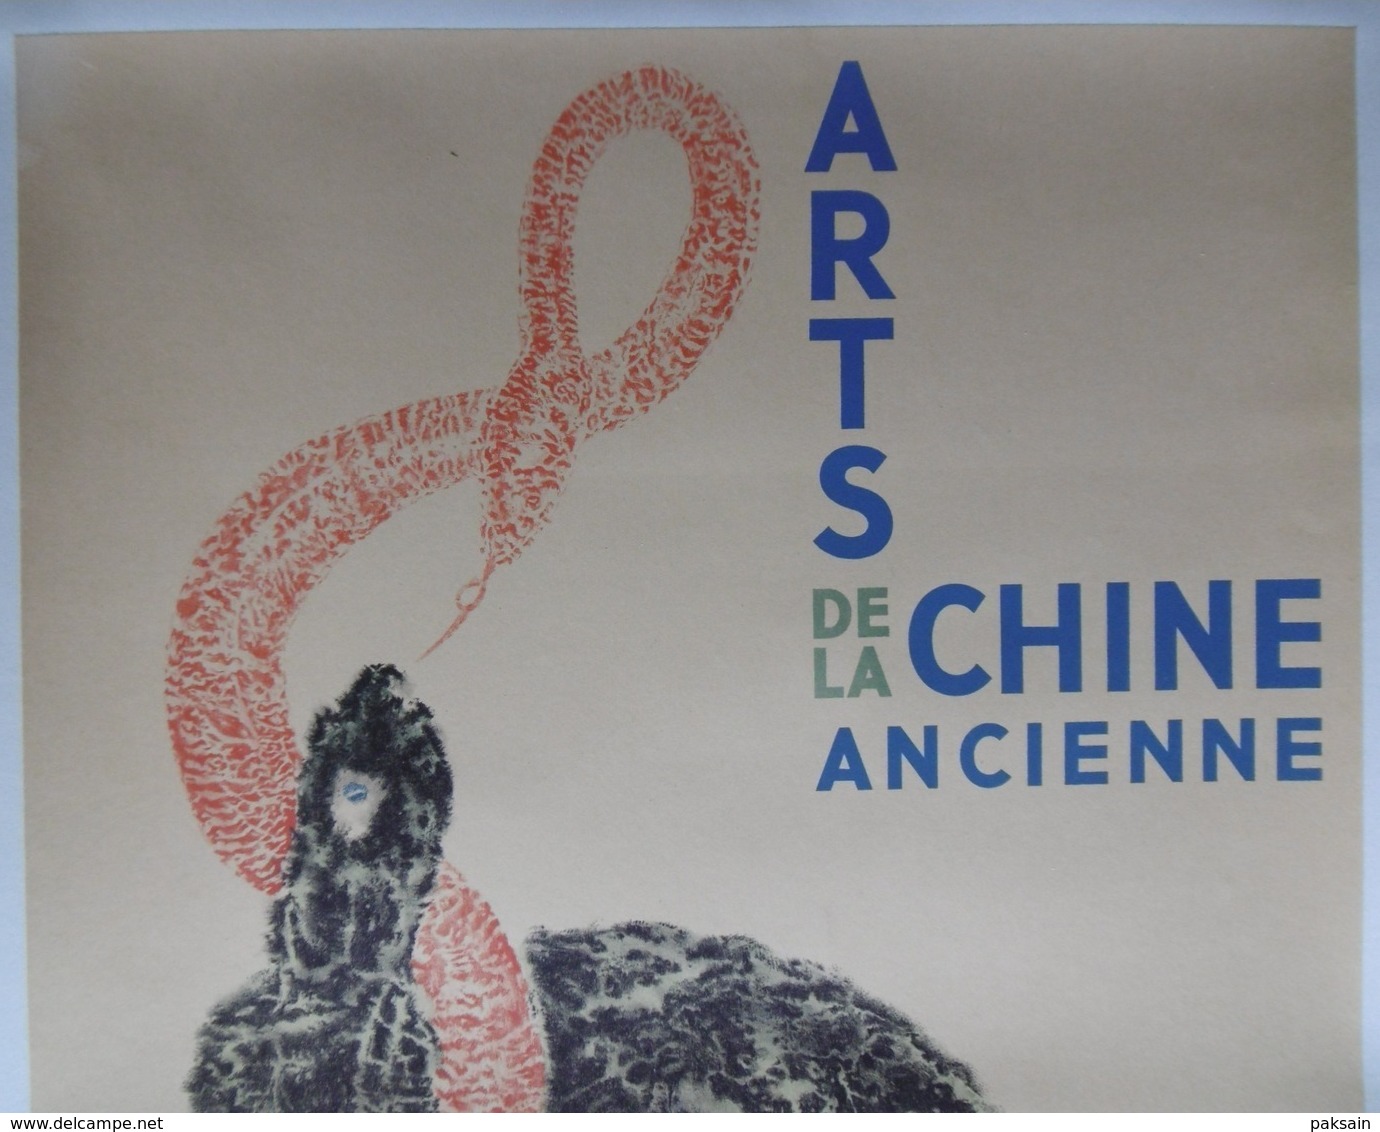 Arts De La Chine Ancienne Affiche Originale 1937 Paris A L'Orangerie Des Tuileries China Chinese Poster - Afiches